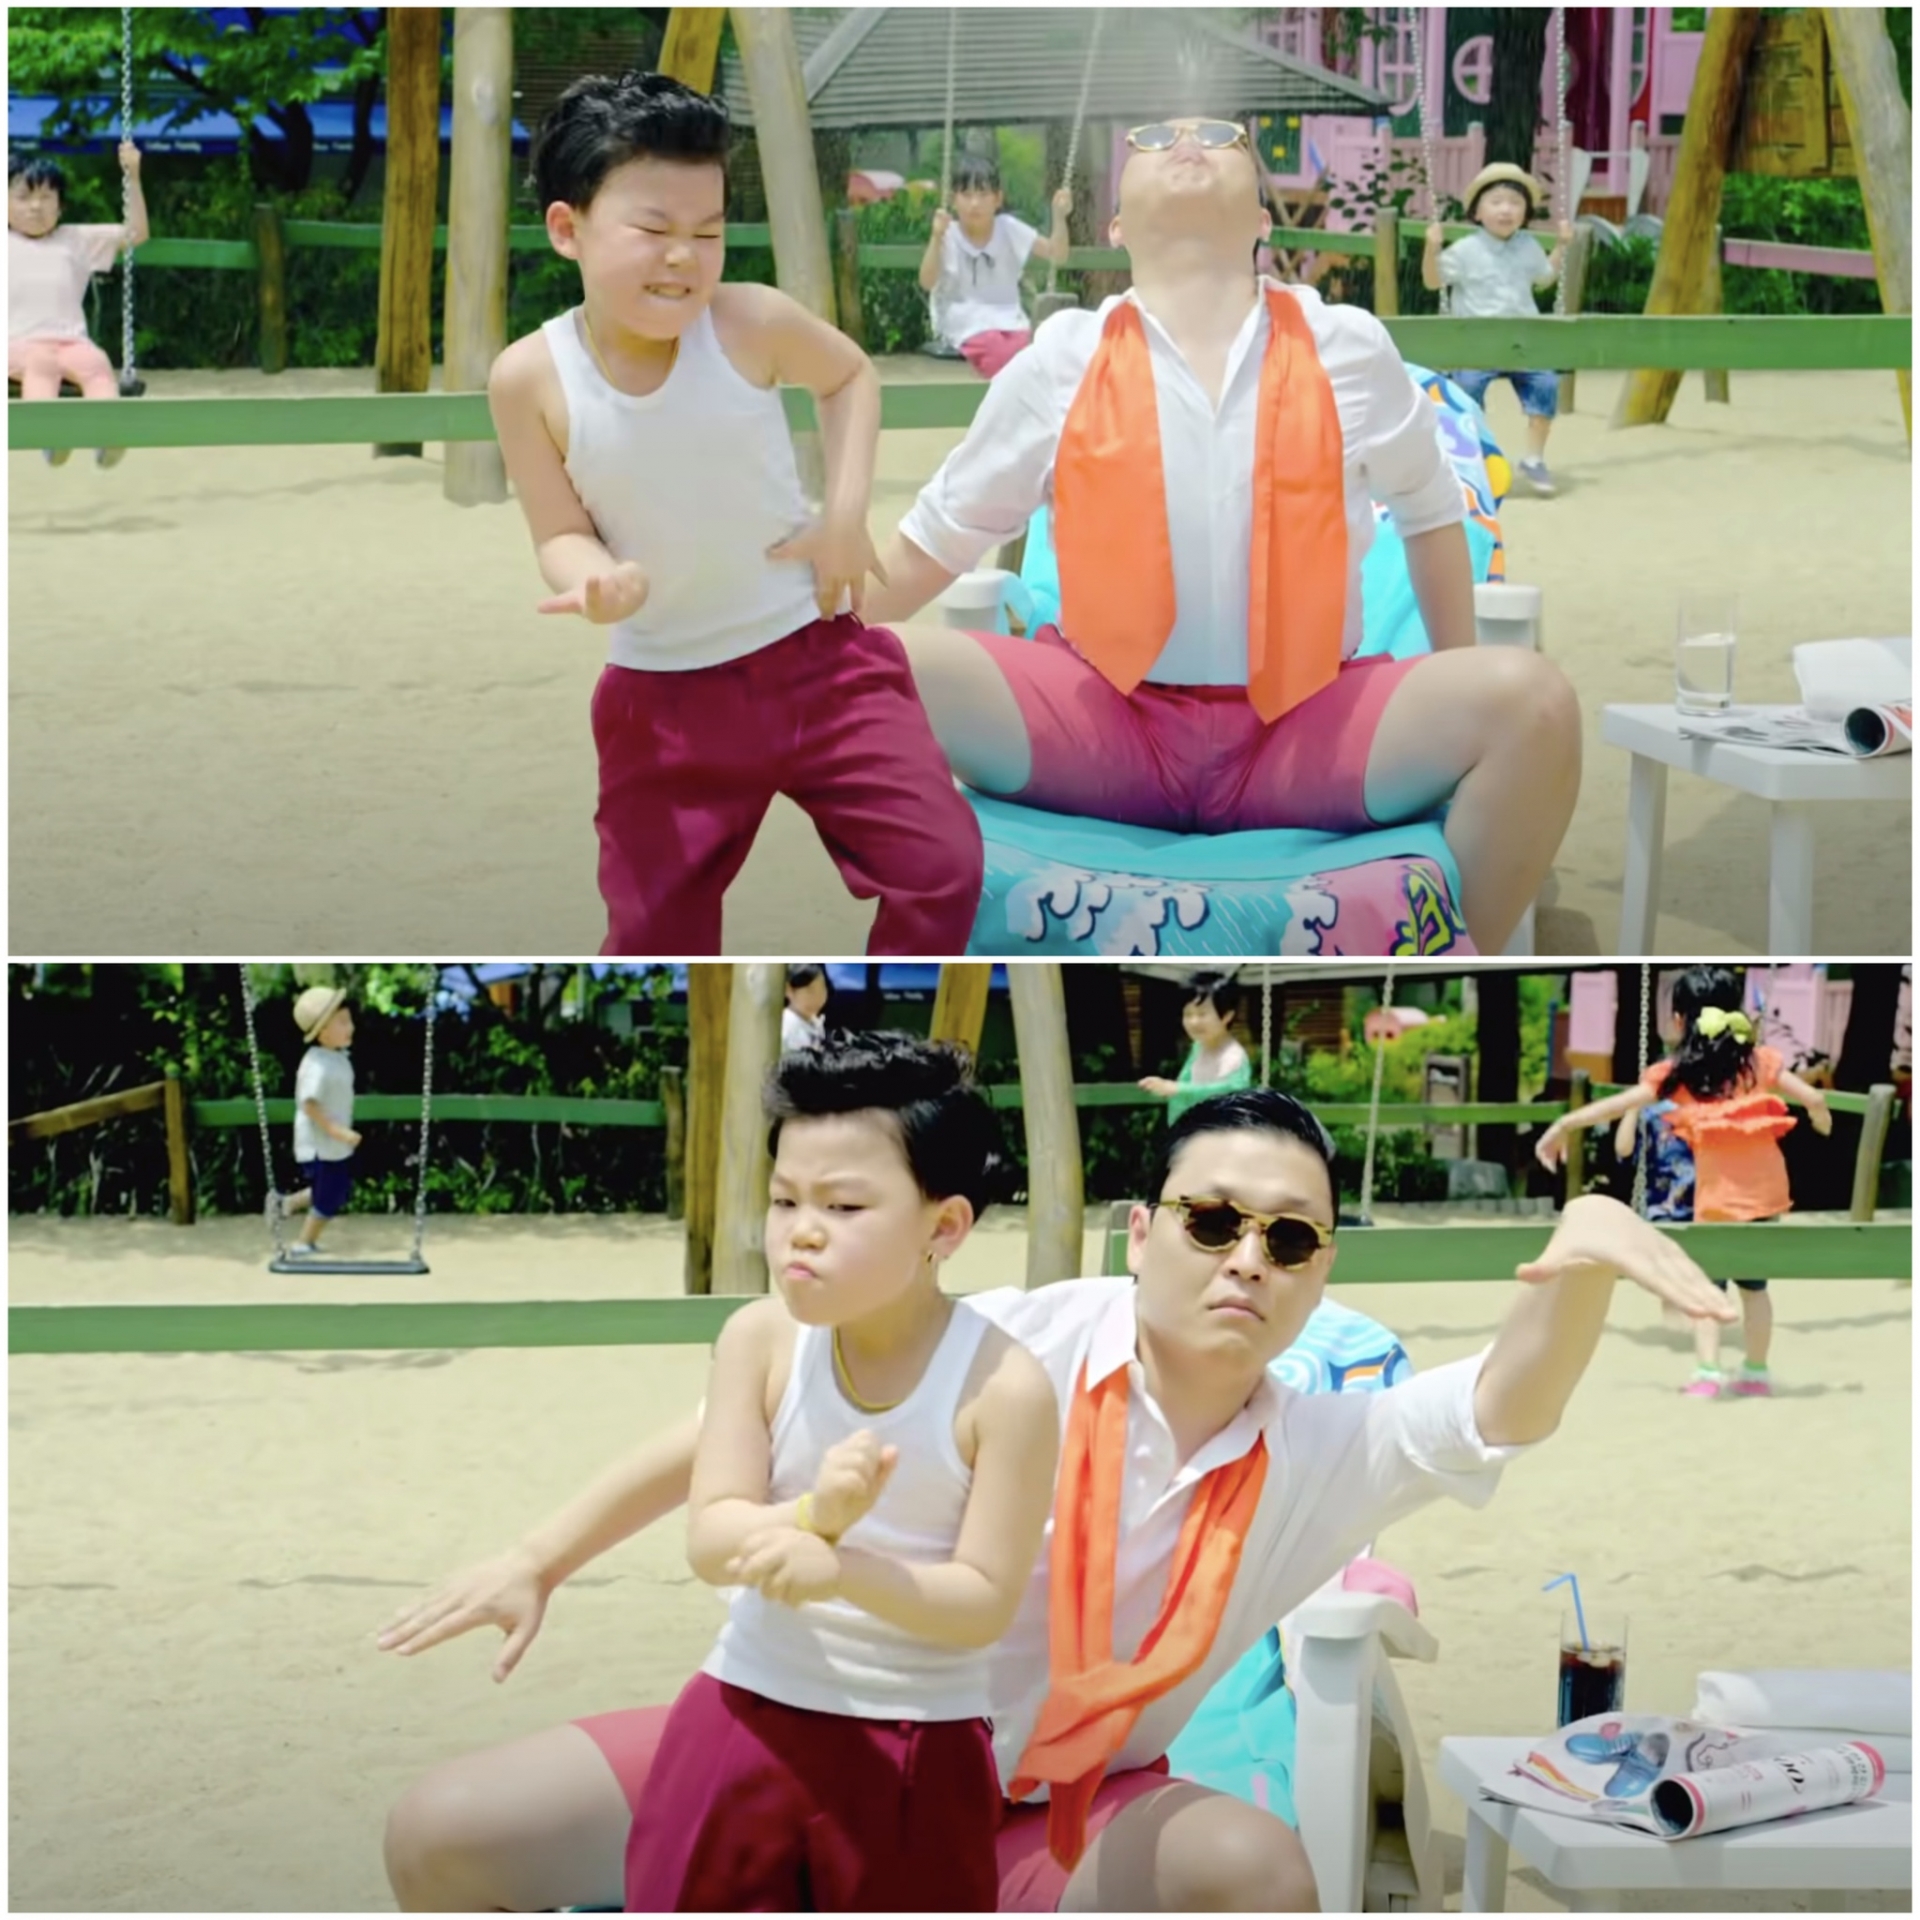 'Tiểu PSY' gốc Việt trong siêu hit Gangnam Style trổ mã điển trai ở tuổi 16 - Ảnh 1